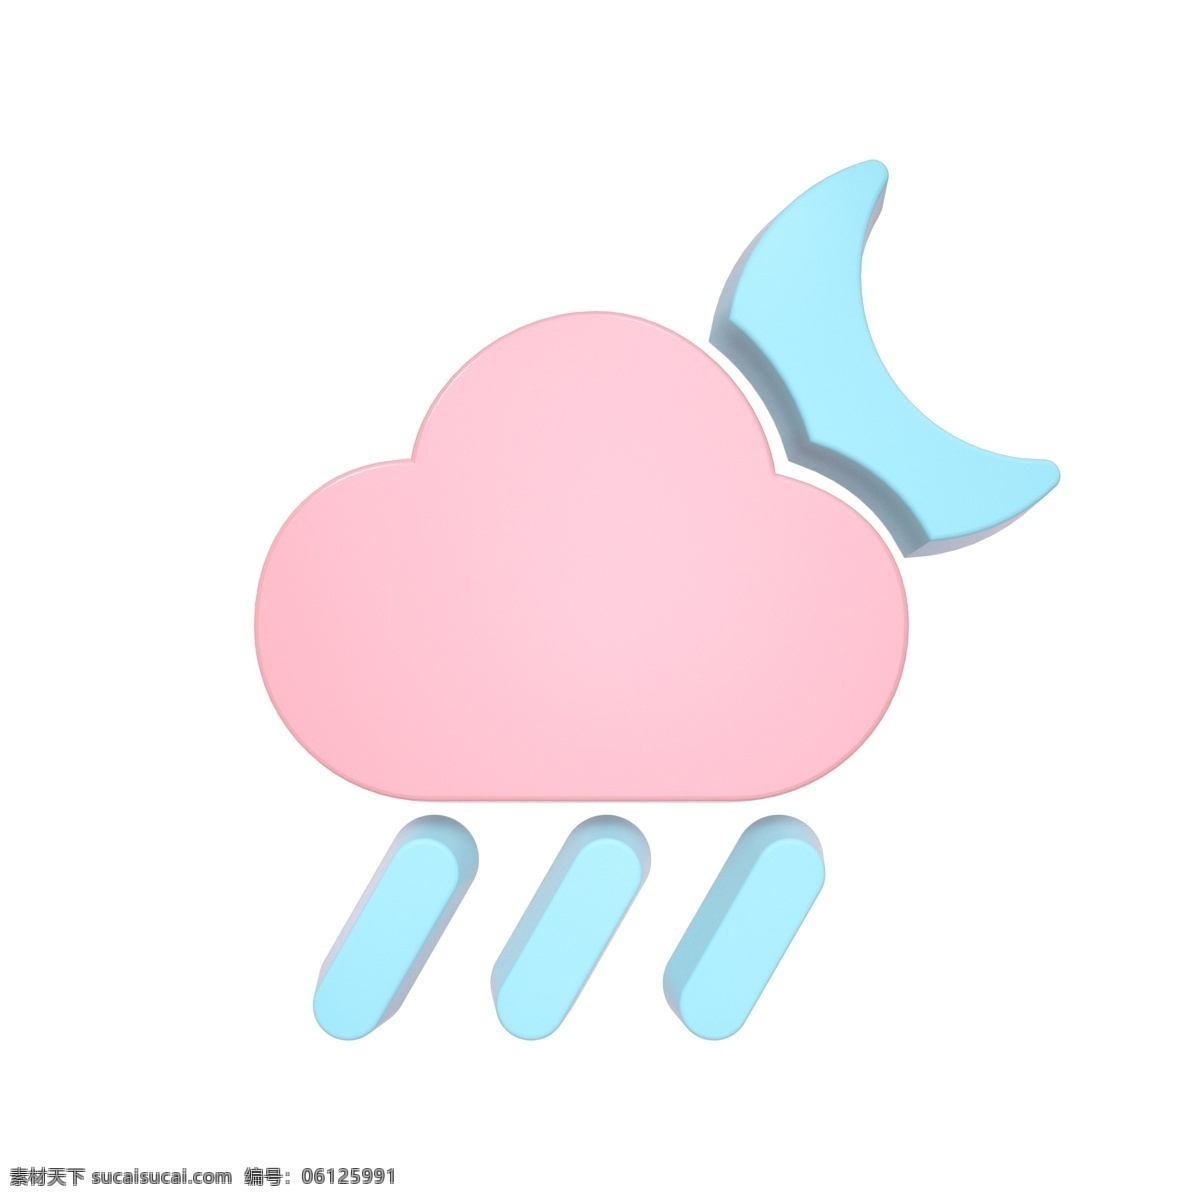 柔 色 天气 类 立体 图标 夜间 大雨 c4d 3d 柔色 粉色 青色 天气类图标 通用图标装饰 可爱 常用 夜间大雨